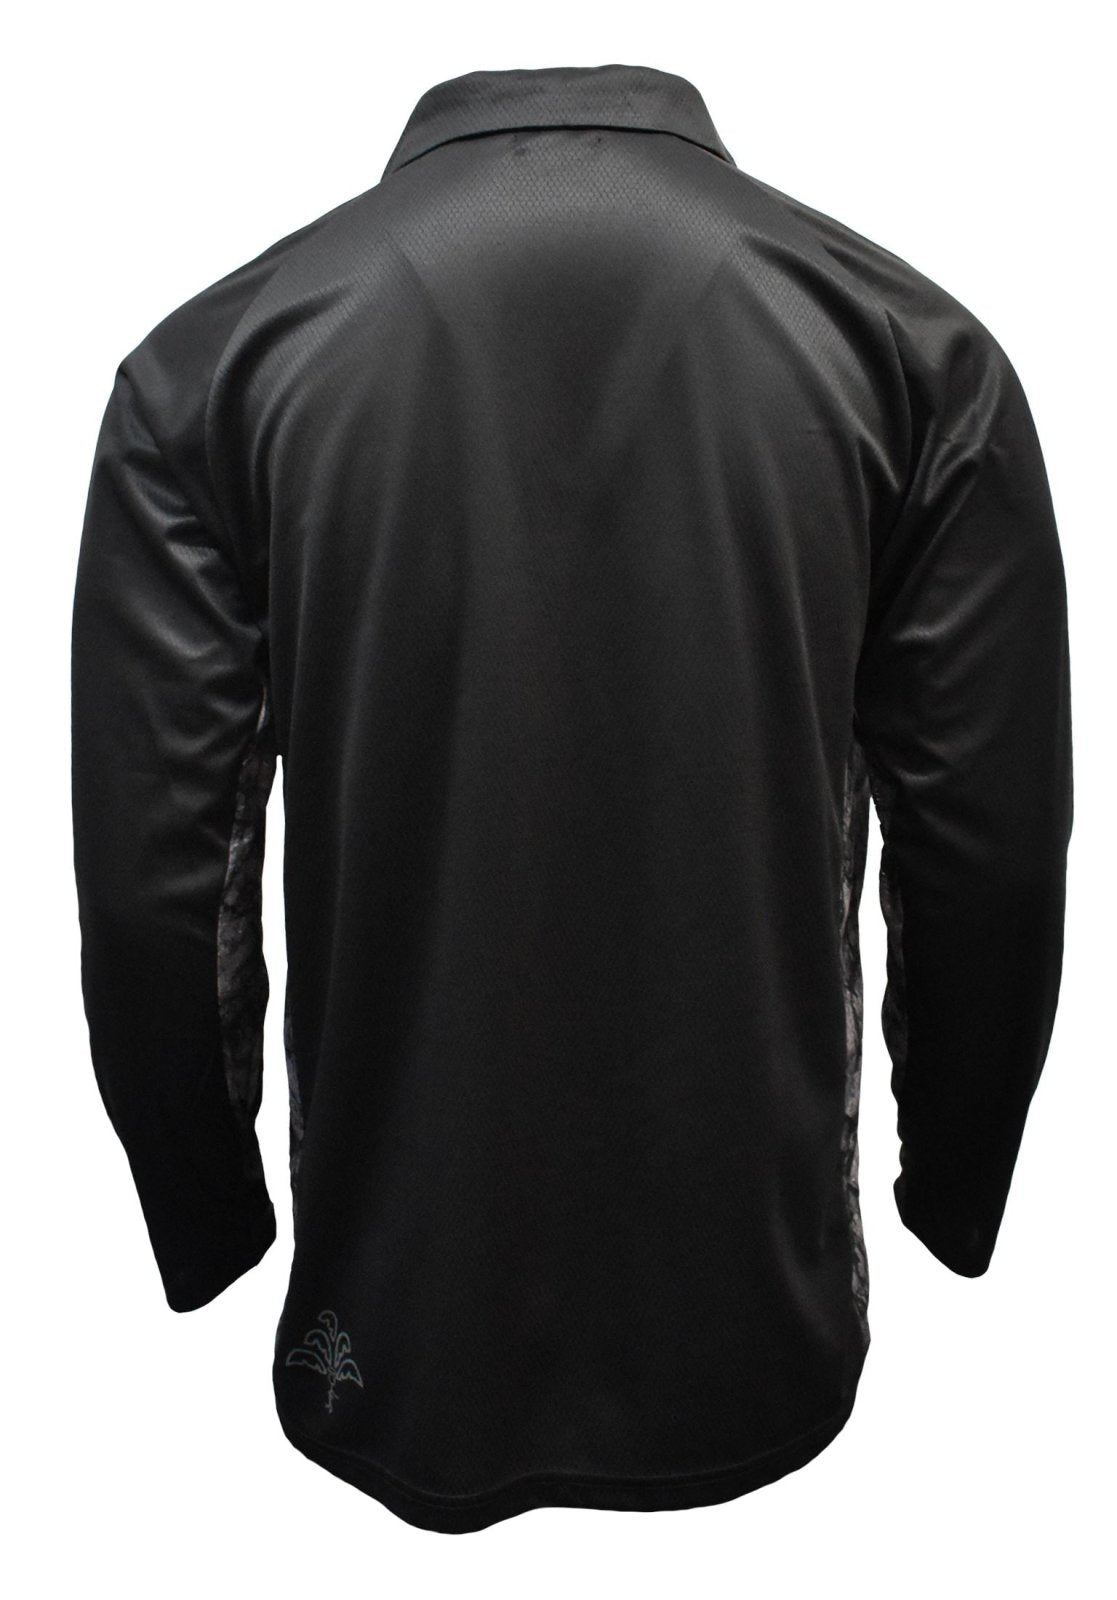 Adult L/S Shirt - Sports Black - Design Works Apparel – Design Works  Apparel - Create Your Vibe Outdoors